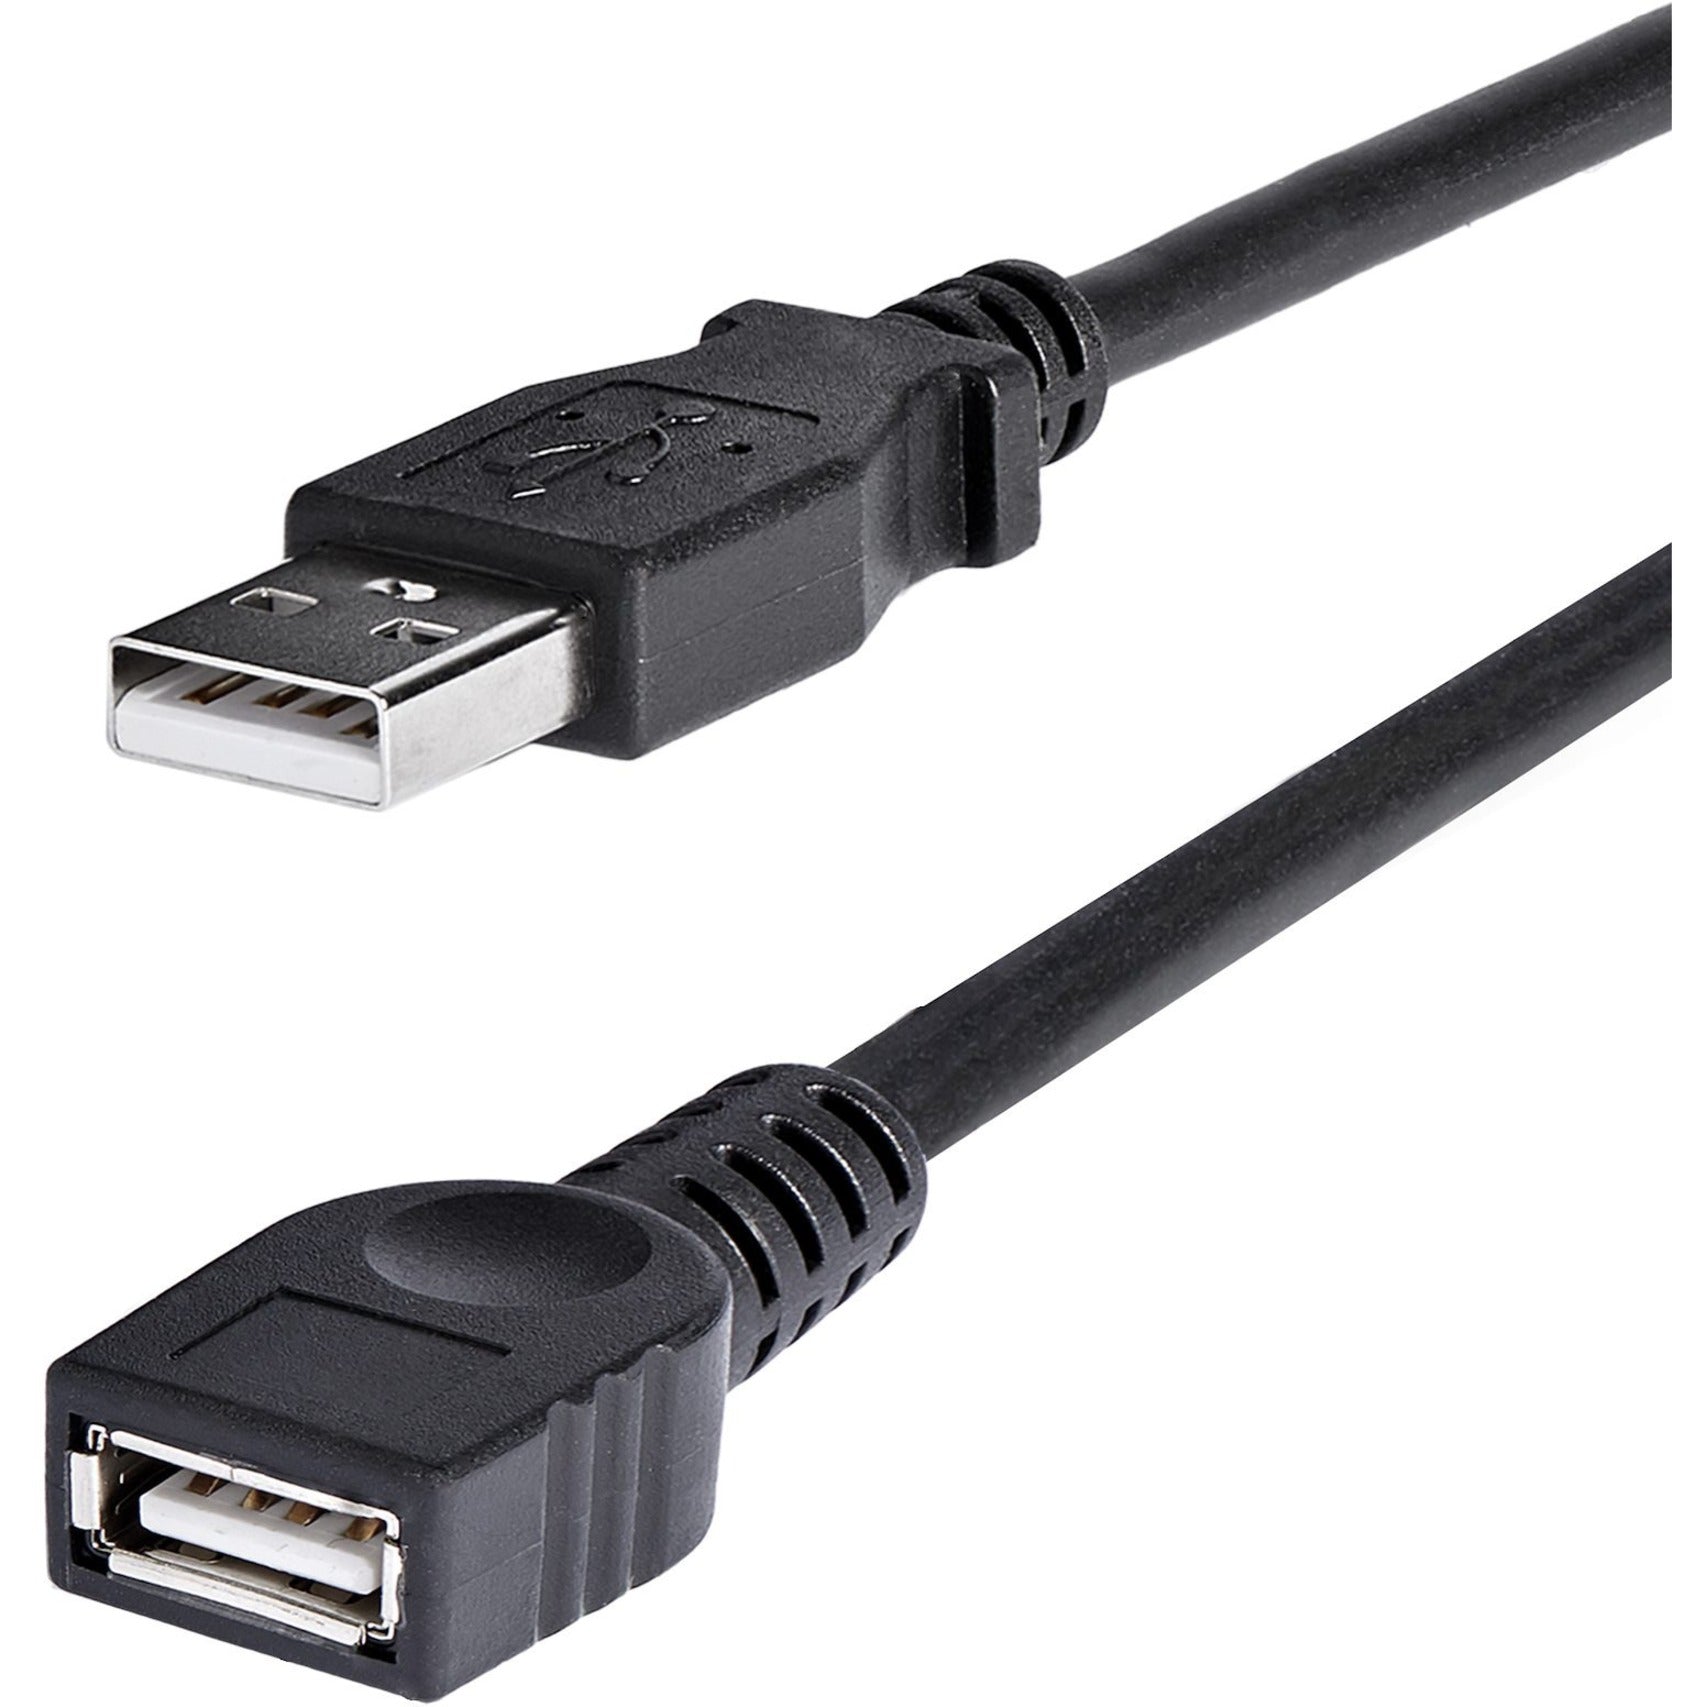 StarTech.com Cable de extensión USBEXTAA6BK de 6 pies en negro USB 2.0 A a A - M/H Cable de transferencia de datos flexible y moldeado